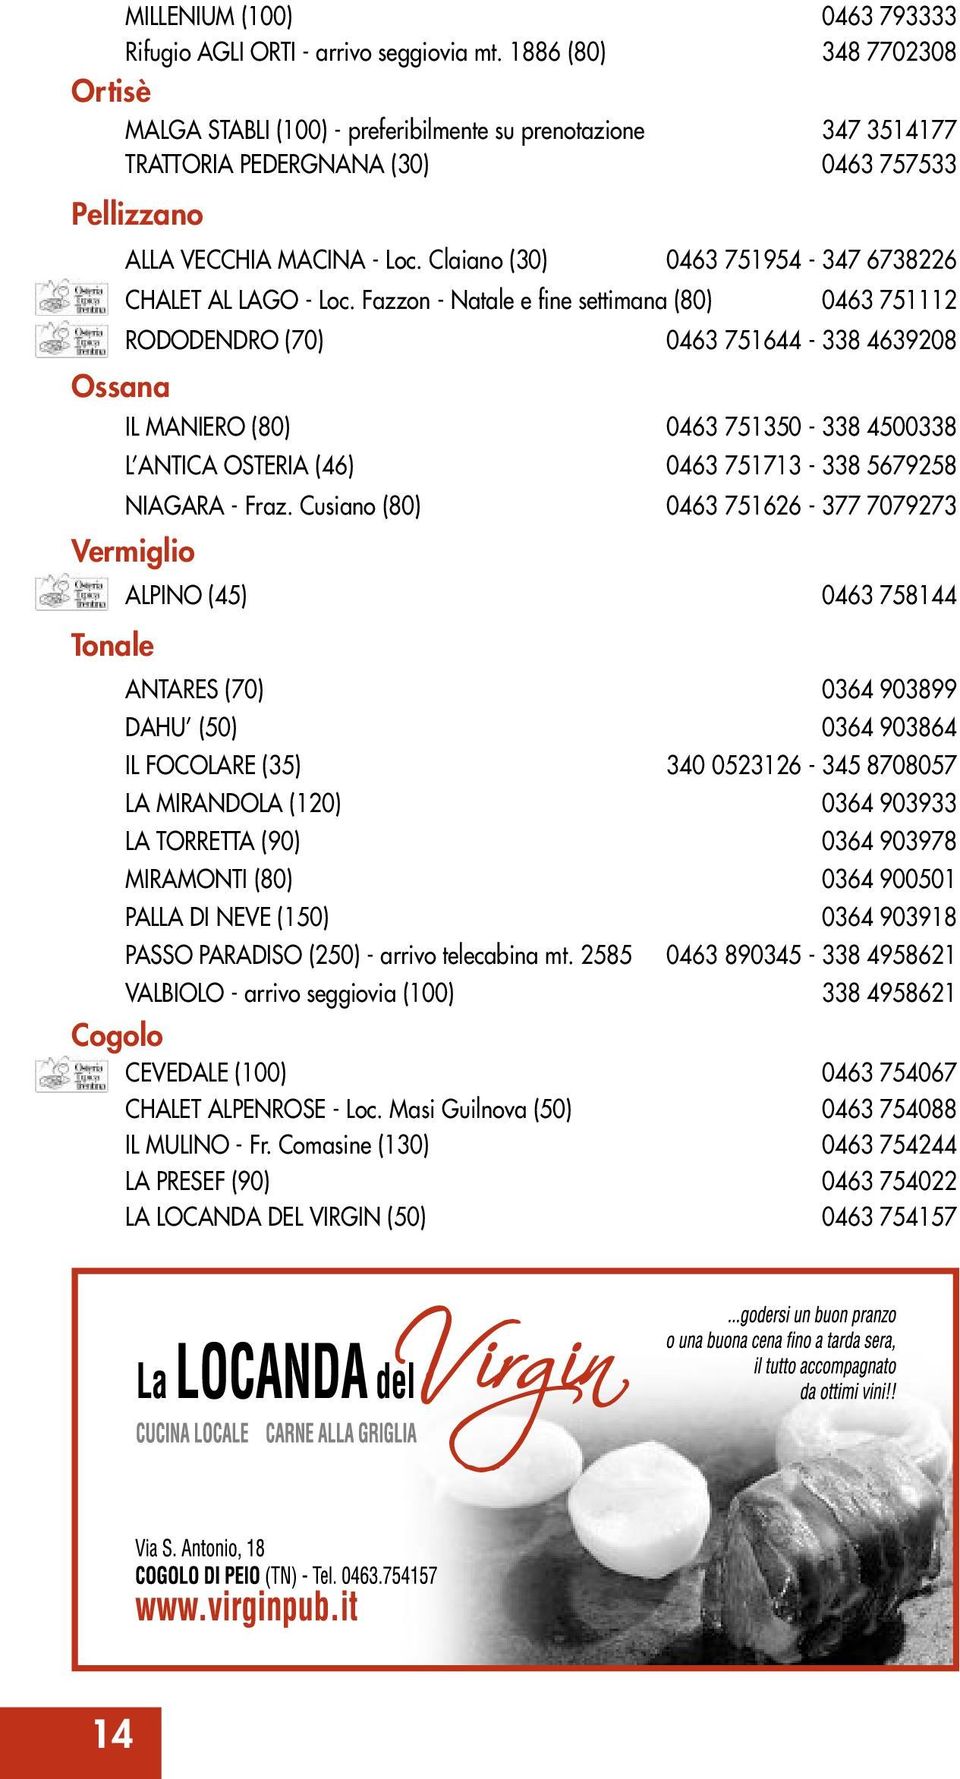 Claiano (30) 0463 751954-347 6738226 CHALET AL LAGO - Loc.